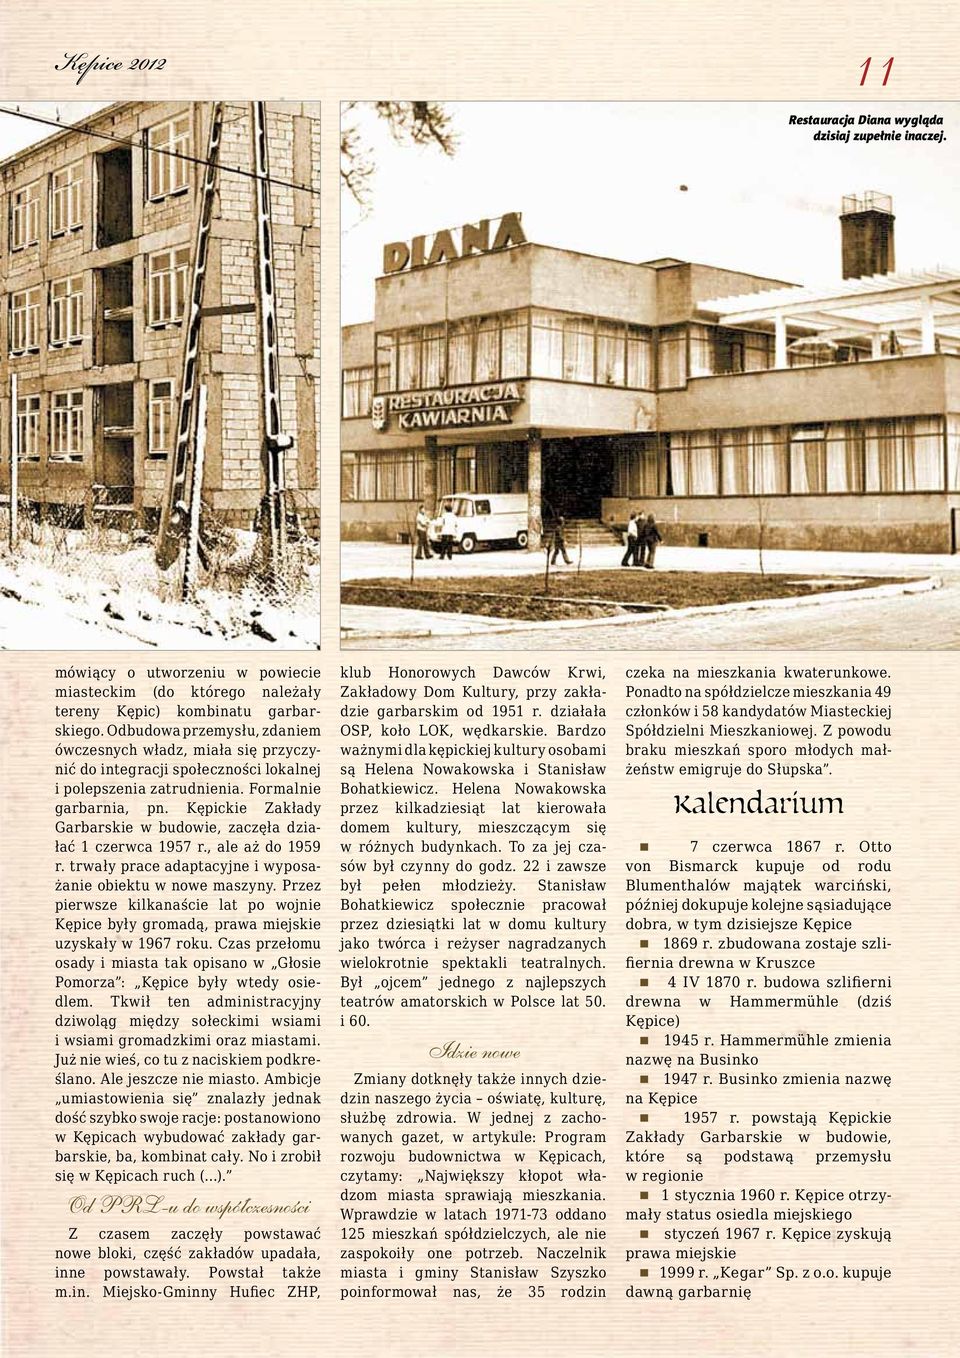 Kępickie Zakłady Garbarskie w budowie, zaczęła działać 1 czerwca 1957 r., ale aż do 1959 r. trwały prace adaptacyjne i wyposażanie obiektu w nowe maszyny.